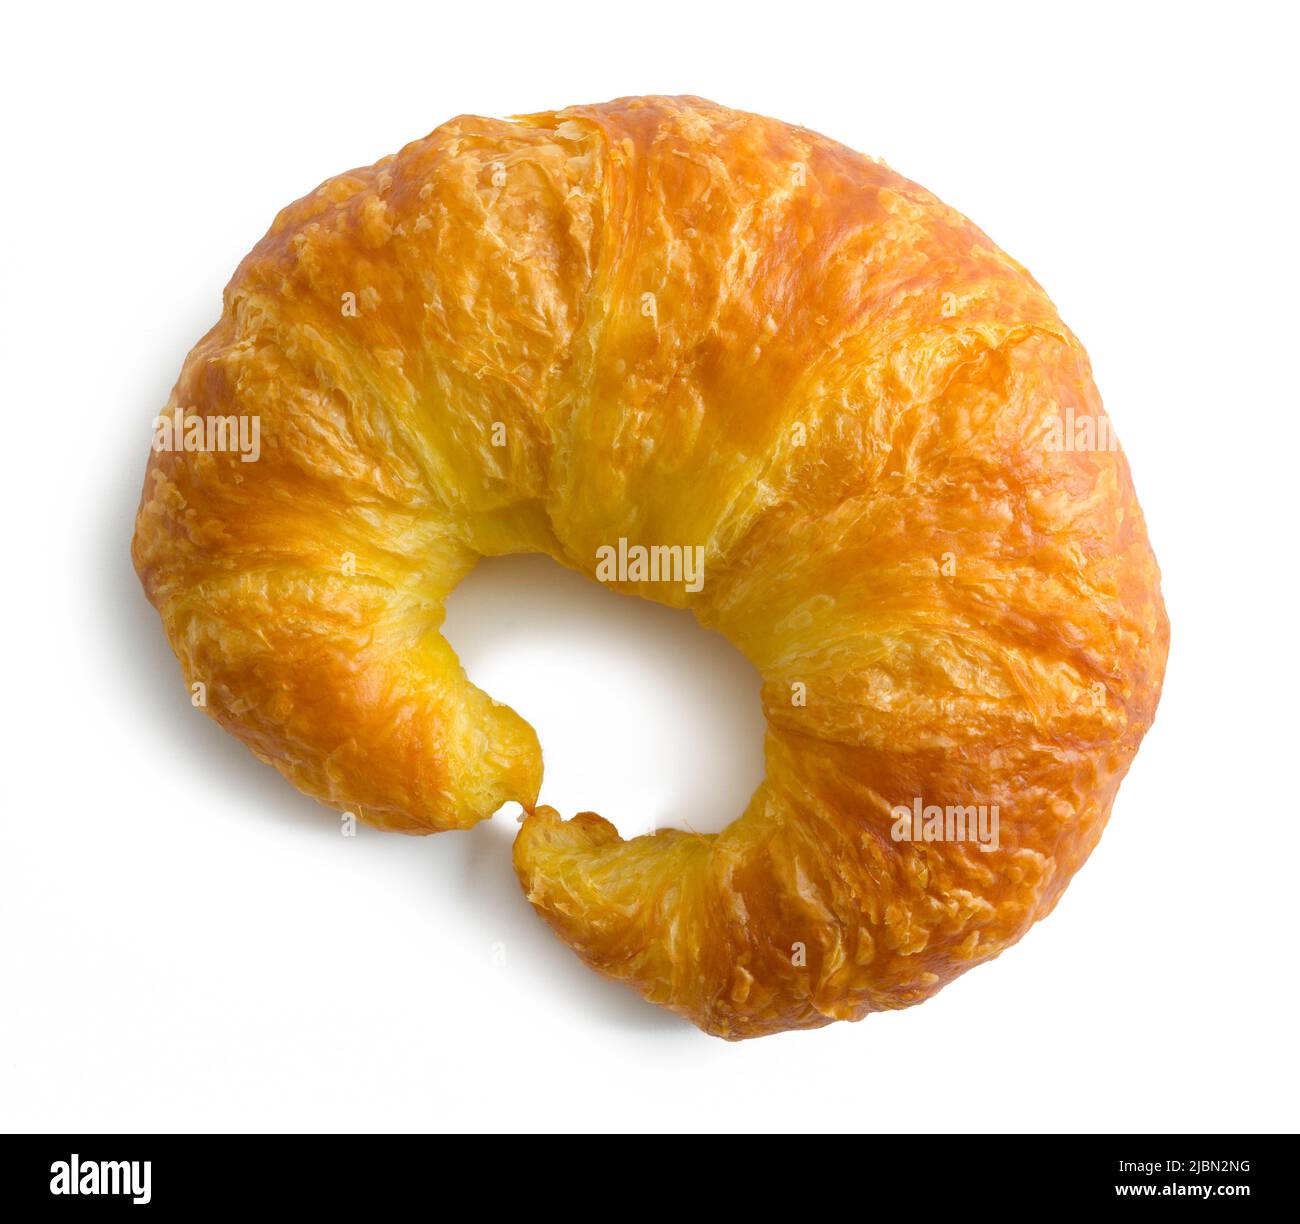 Gebackene Croissant Roll Top View Ausschnitt auf Weiß. Stockfoto